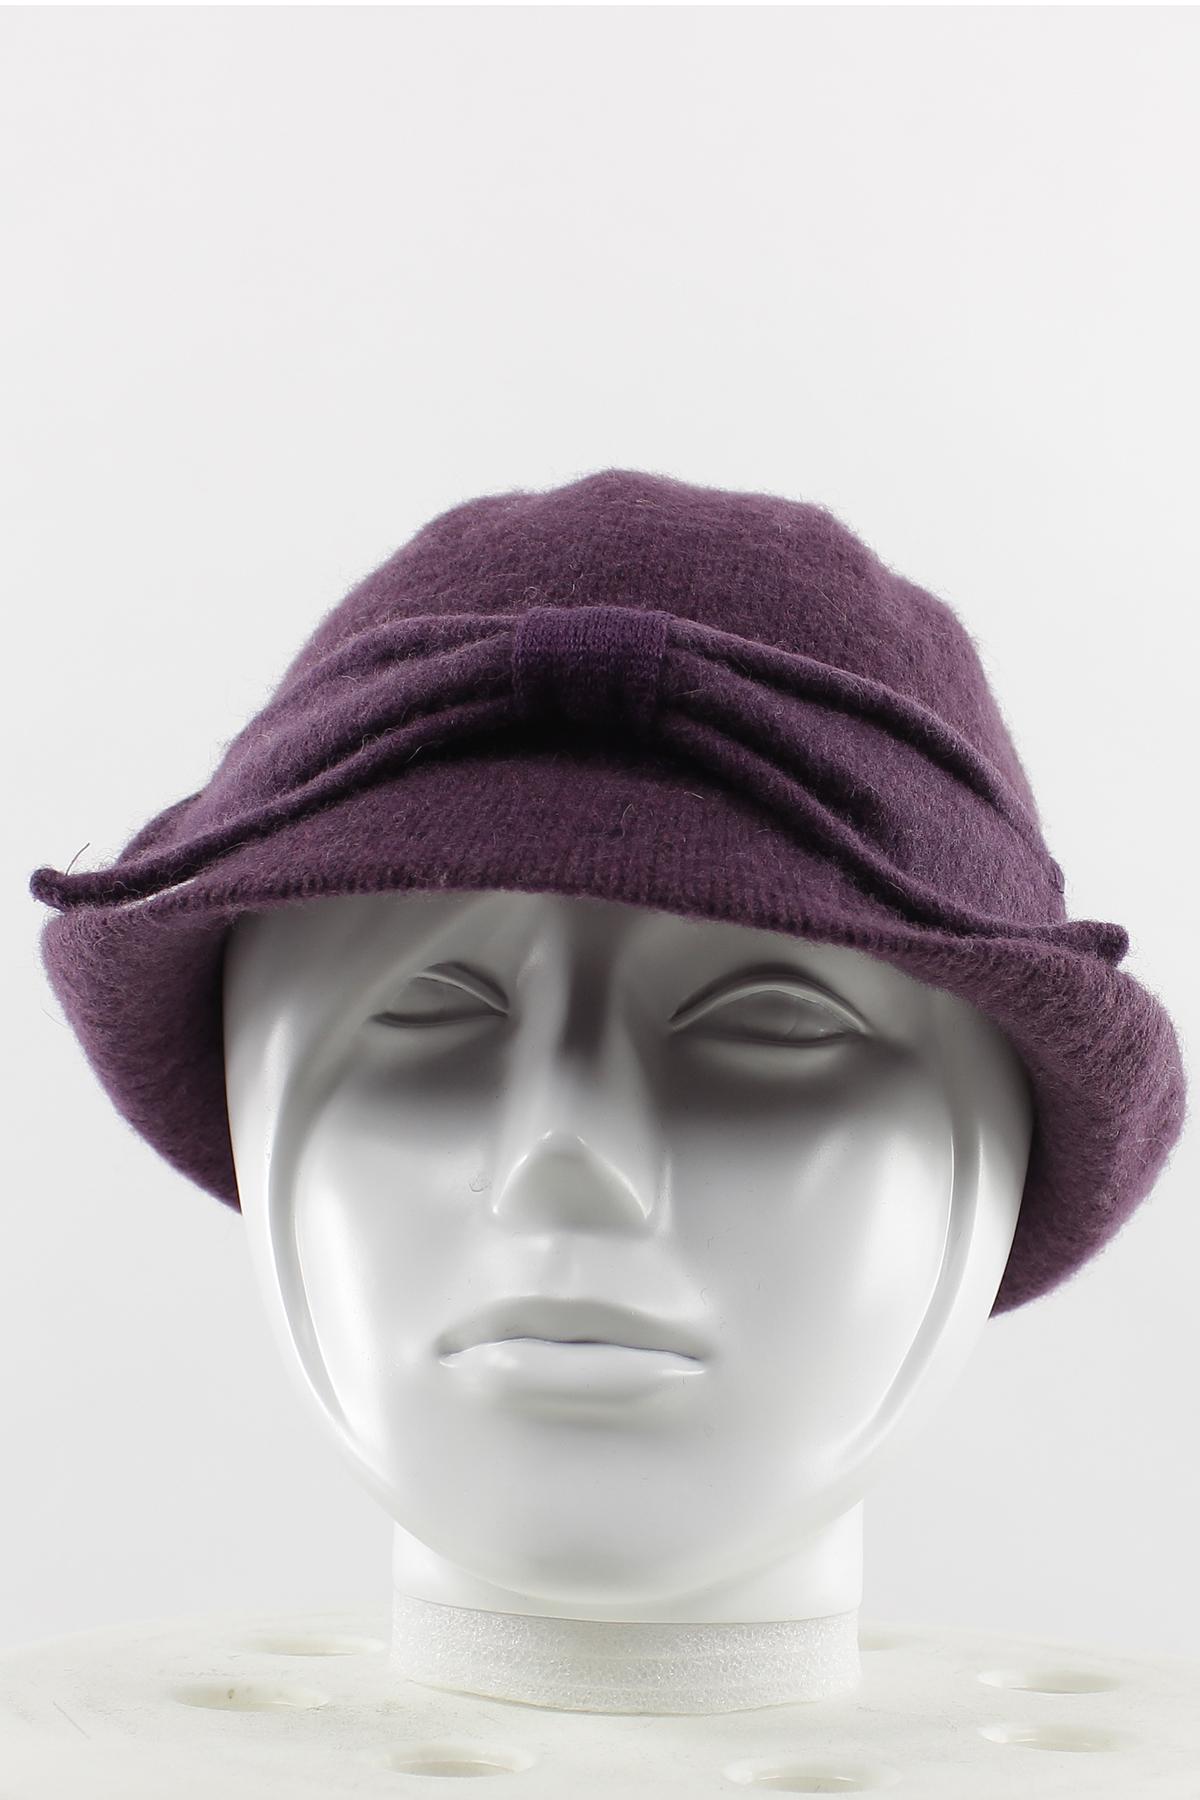 Hats Accessories Purple Lil Moon GHT-006 #c Efashion Paris